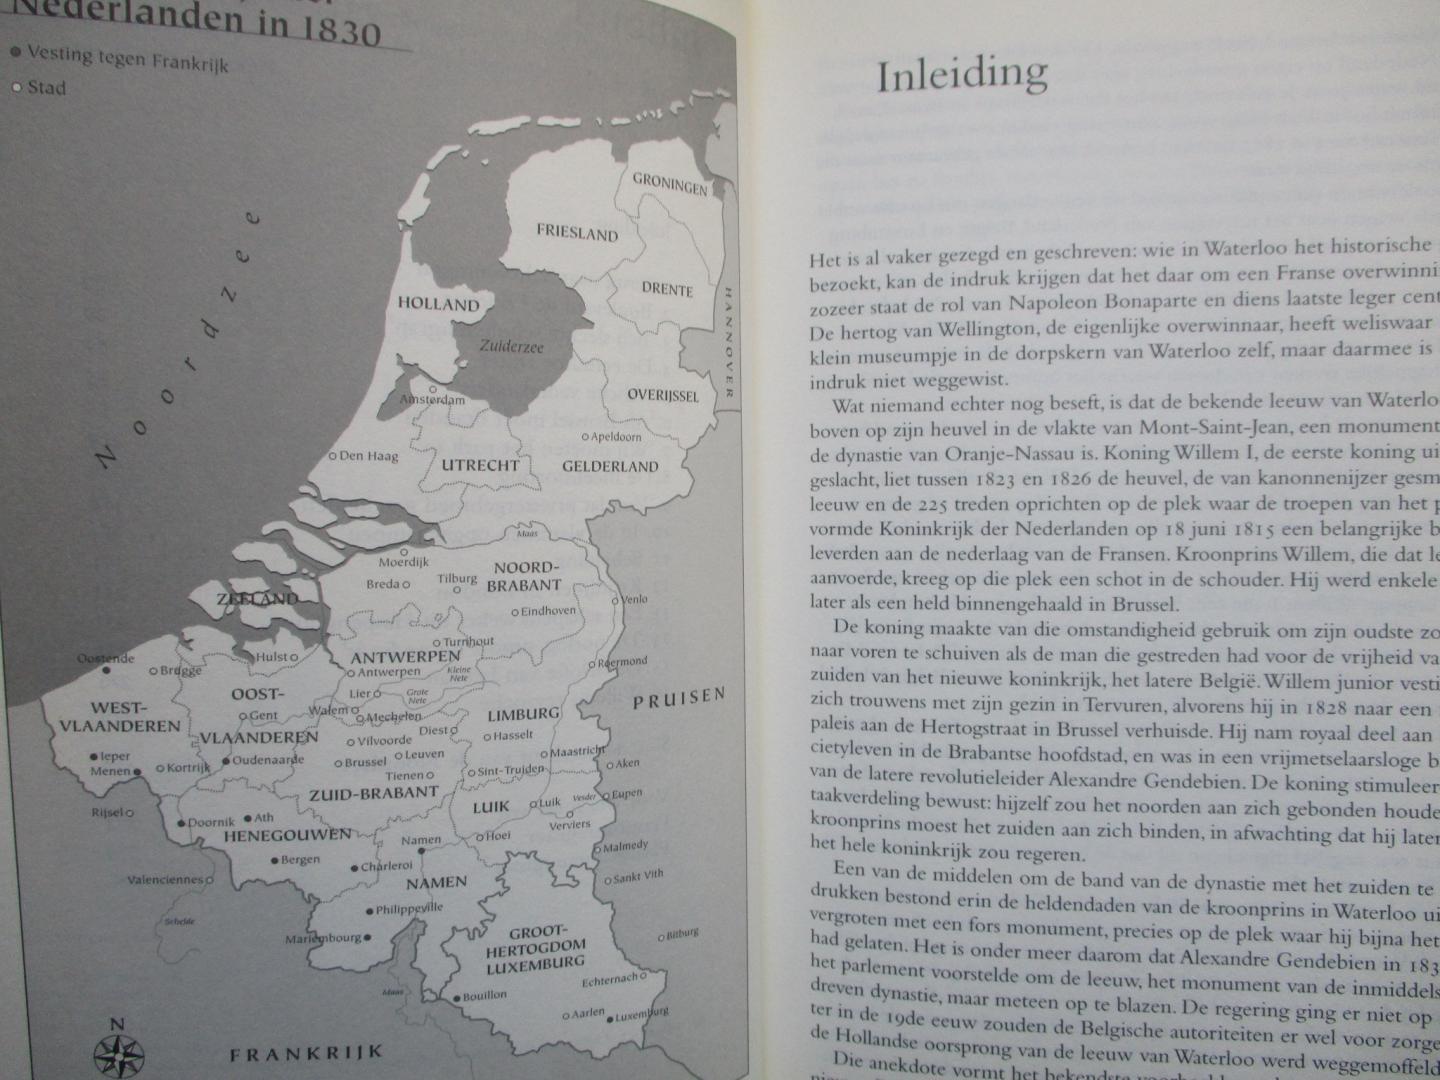 Falter, Rolf - 1830. De scheiding van Nederland, België en Luxemburg.